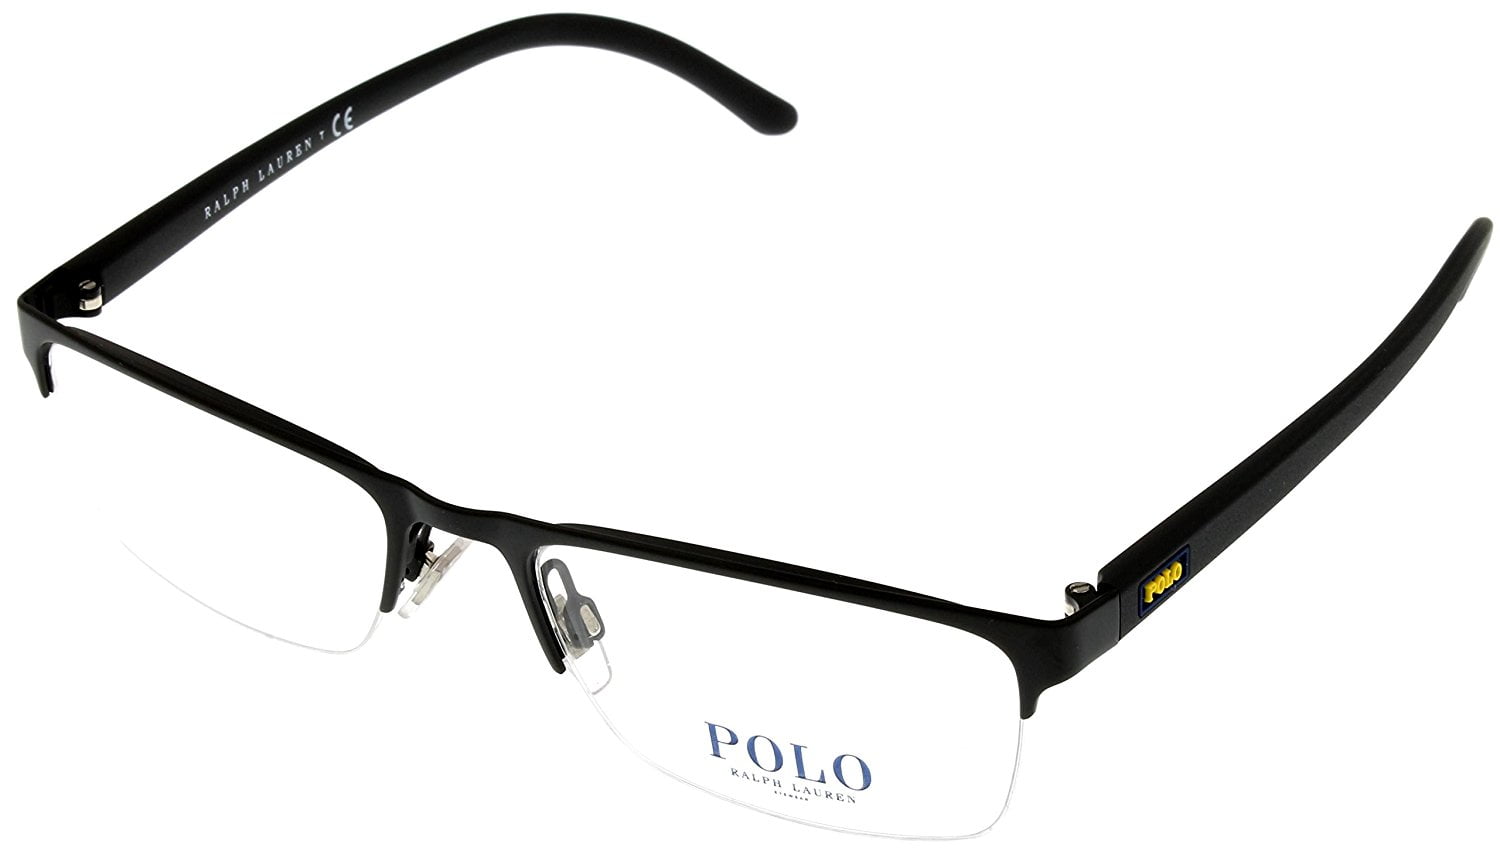 ralph lauren men's eyeglass frames